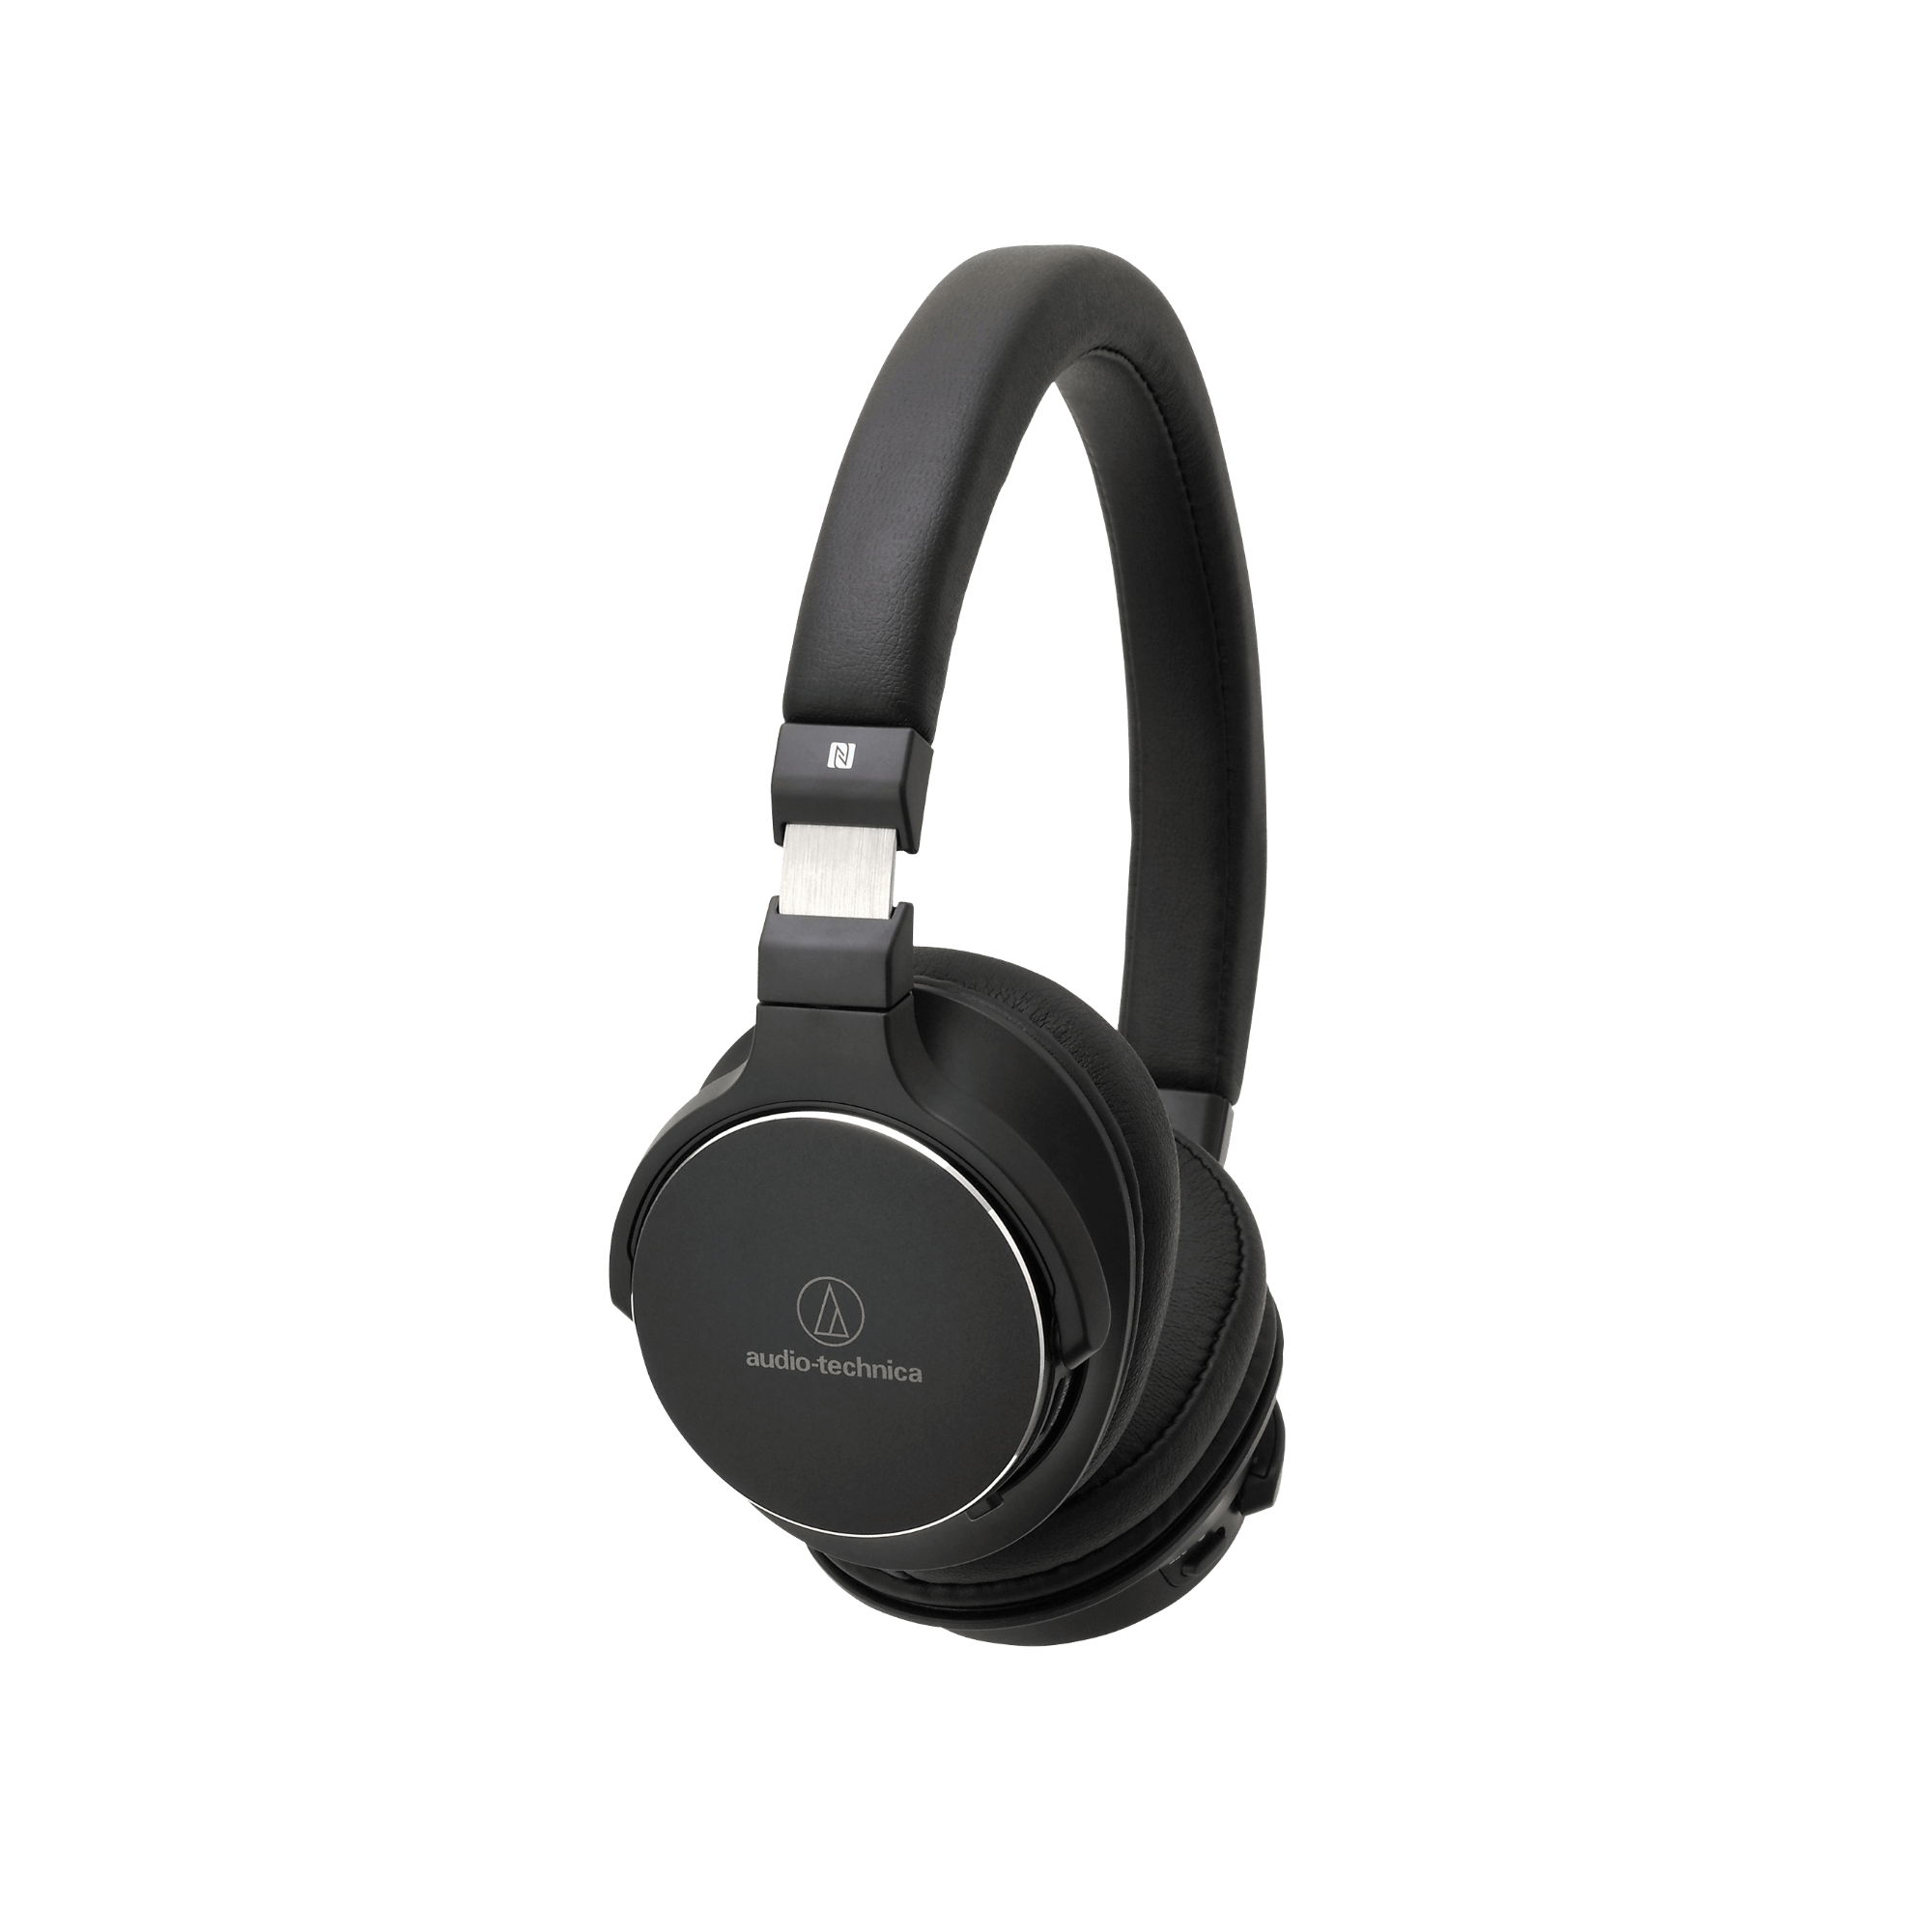 Audio-Technica ATH-SR5BT Over-Ear Headphones